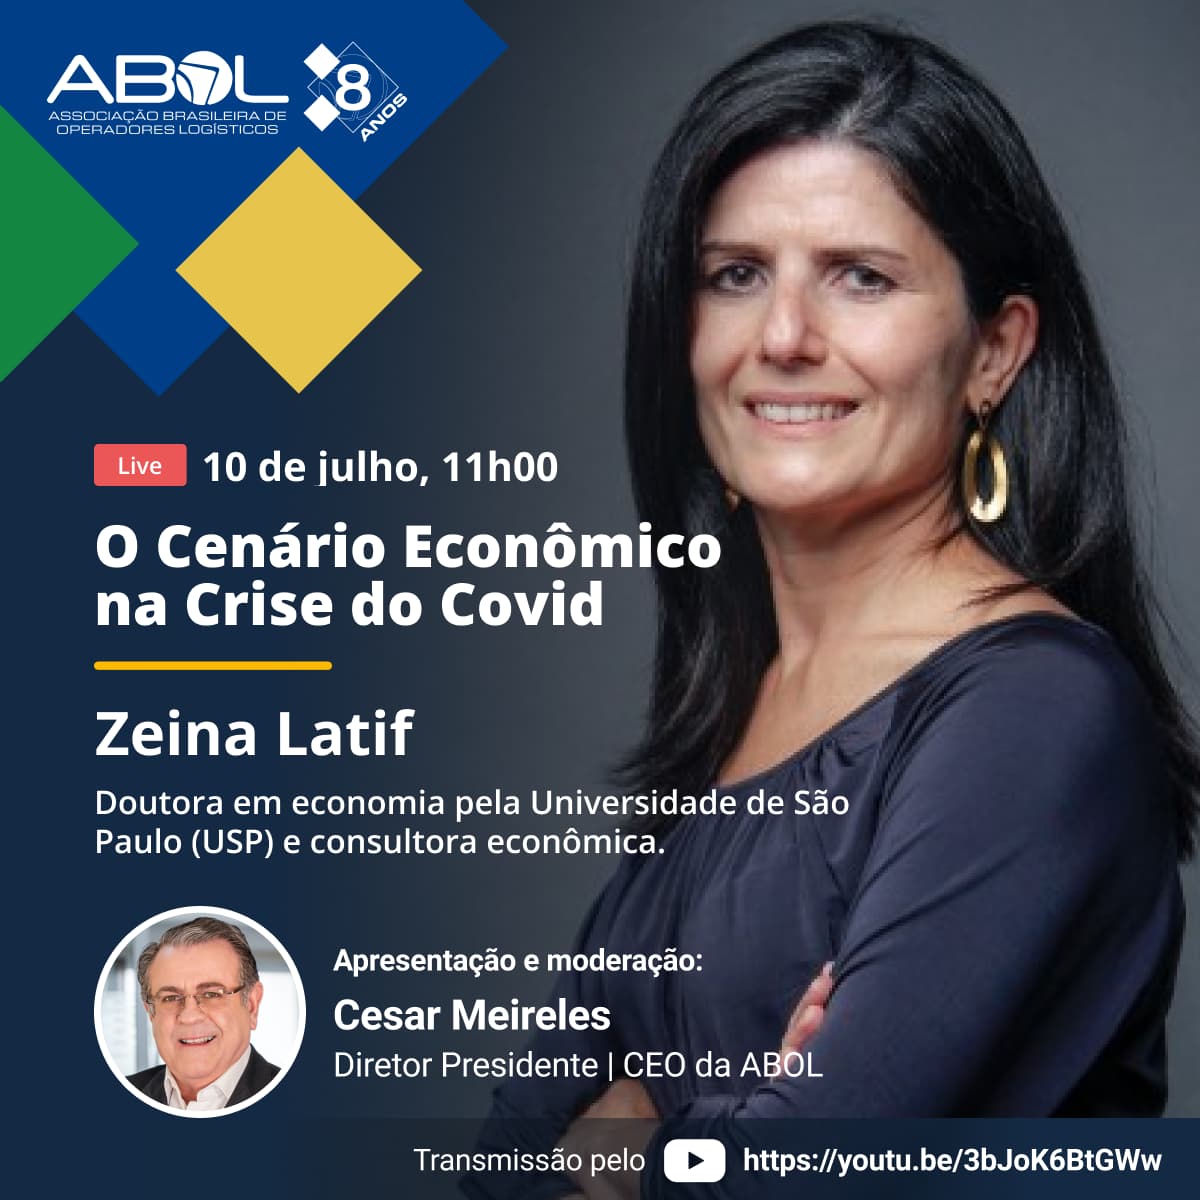  "LIVE: O Cenário Econômico na Crise do Covid"